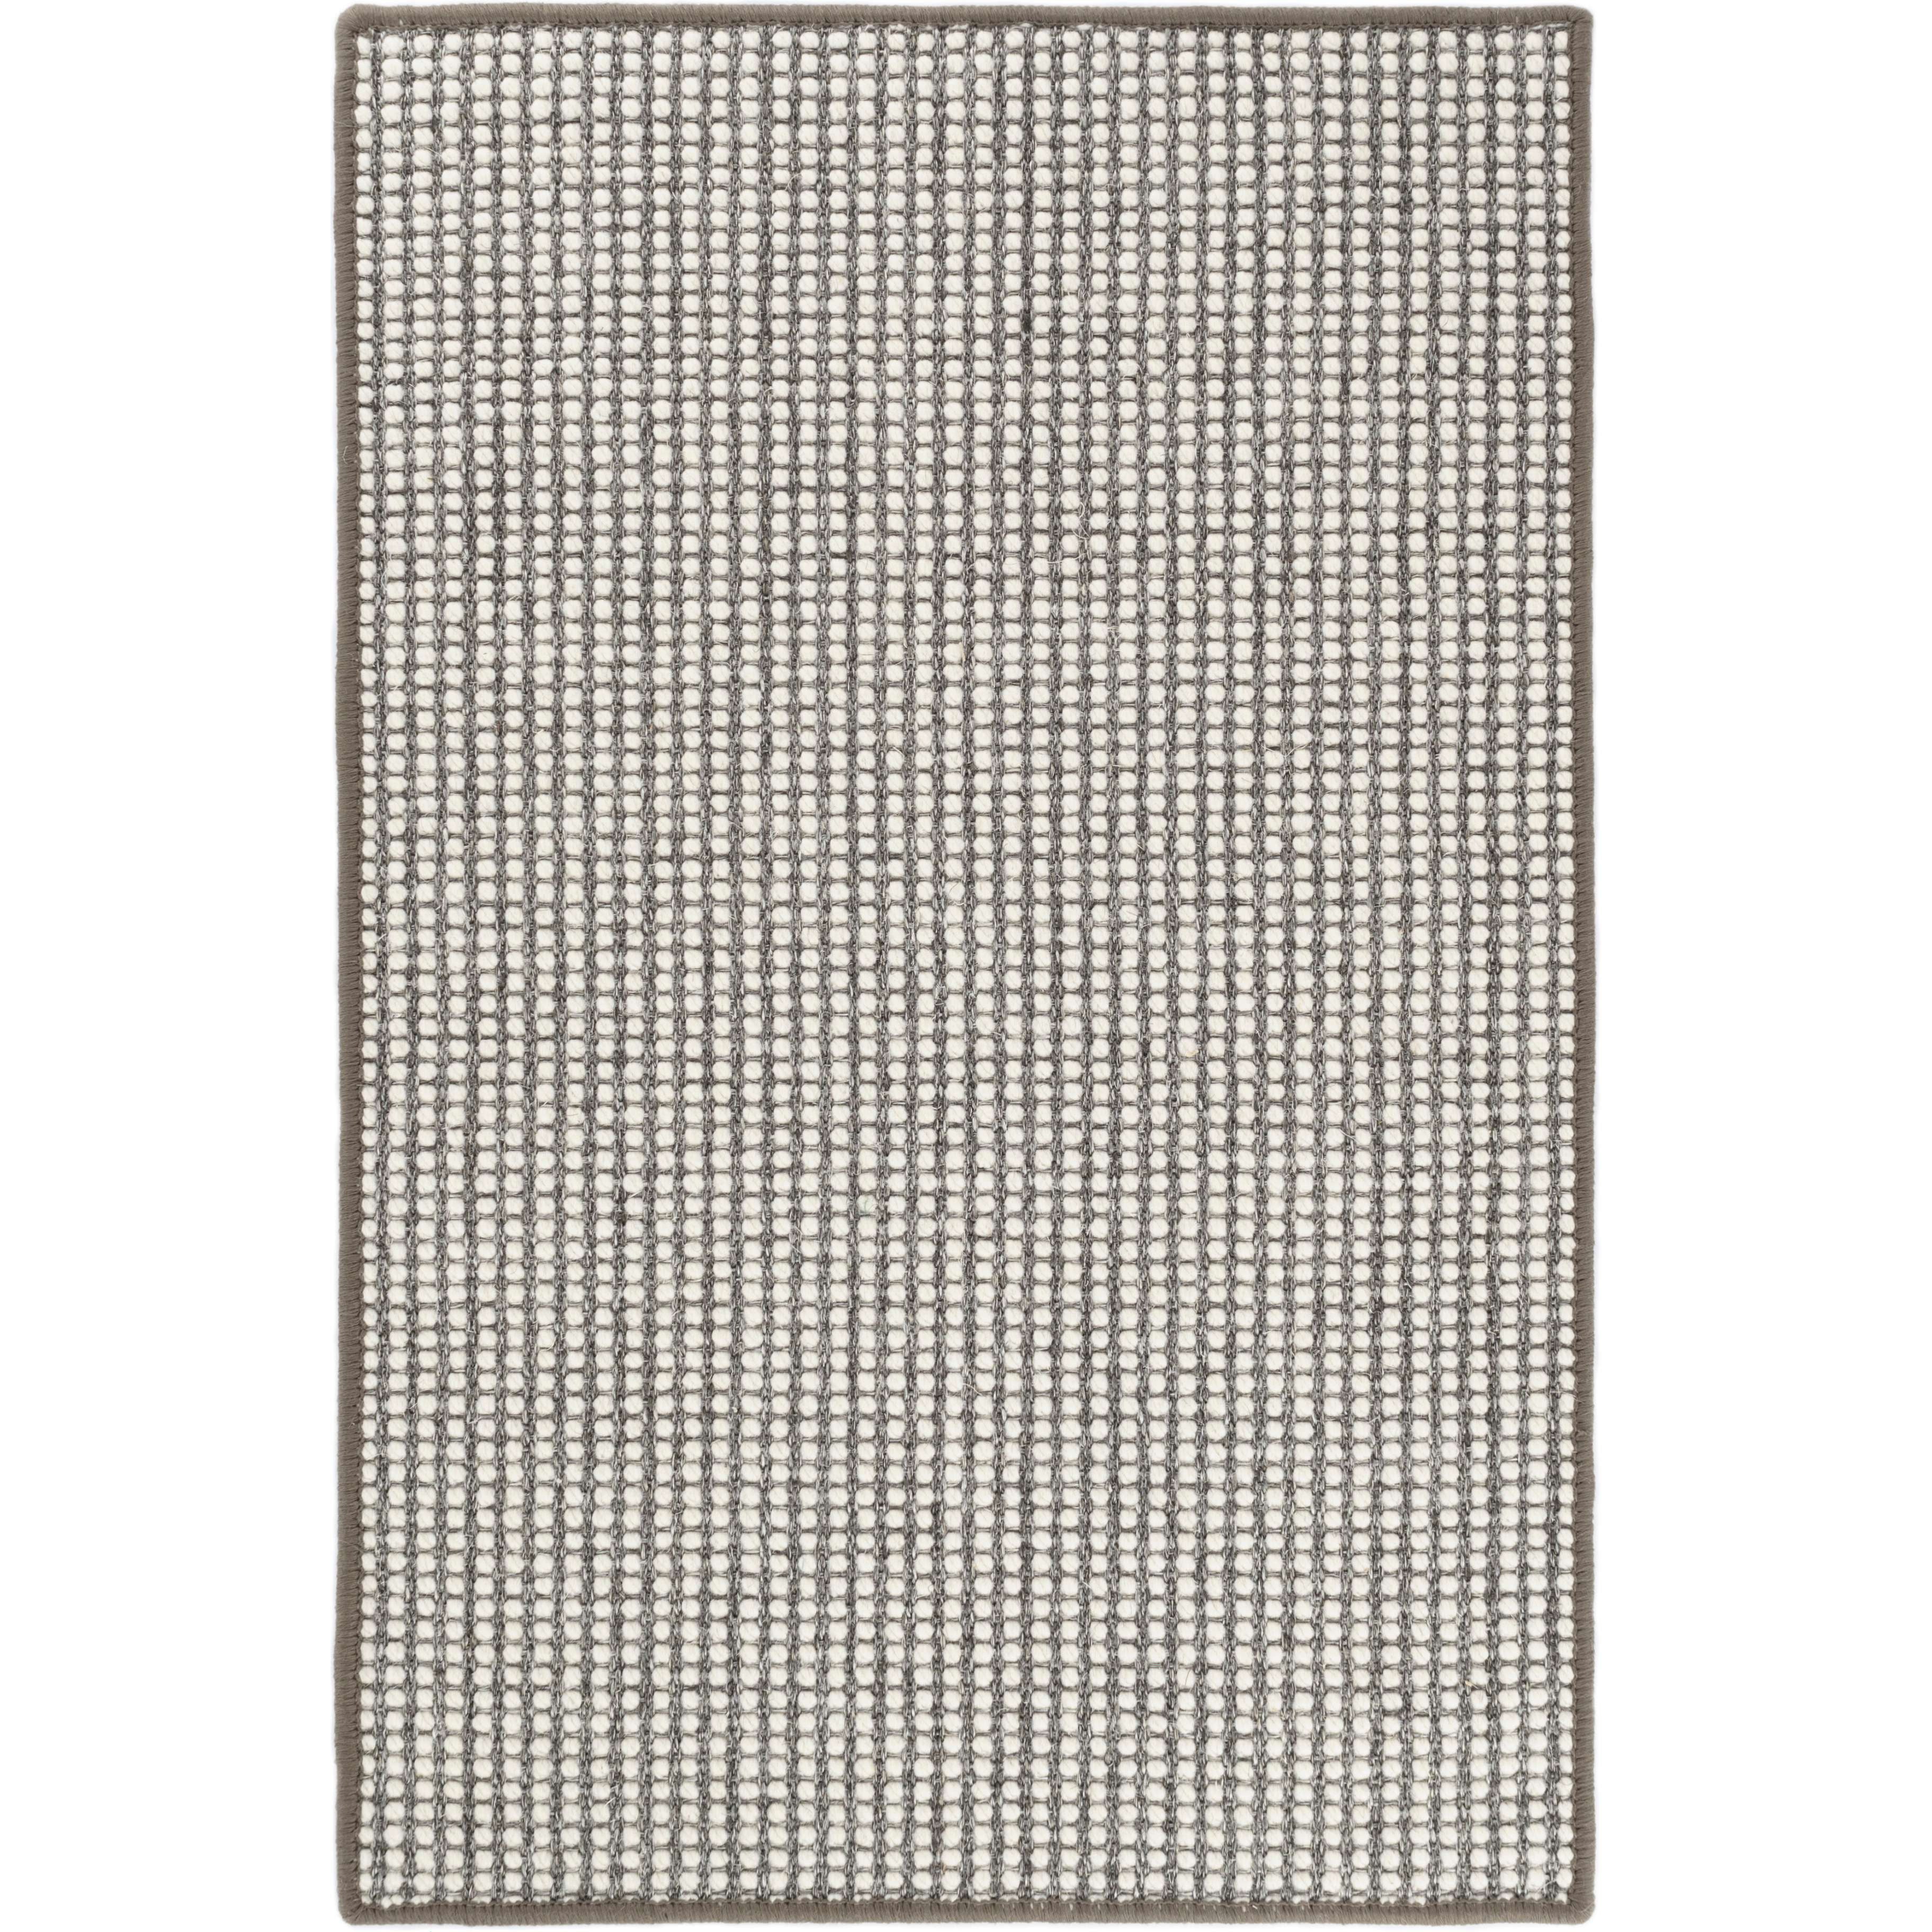 Annie Selke, Pixel Grey Woven Sisal/Wool Rug